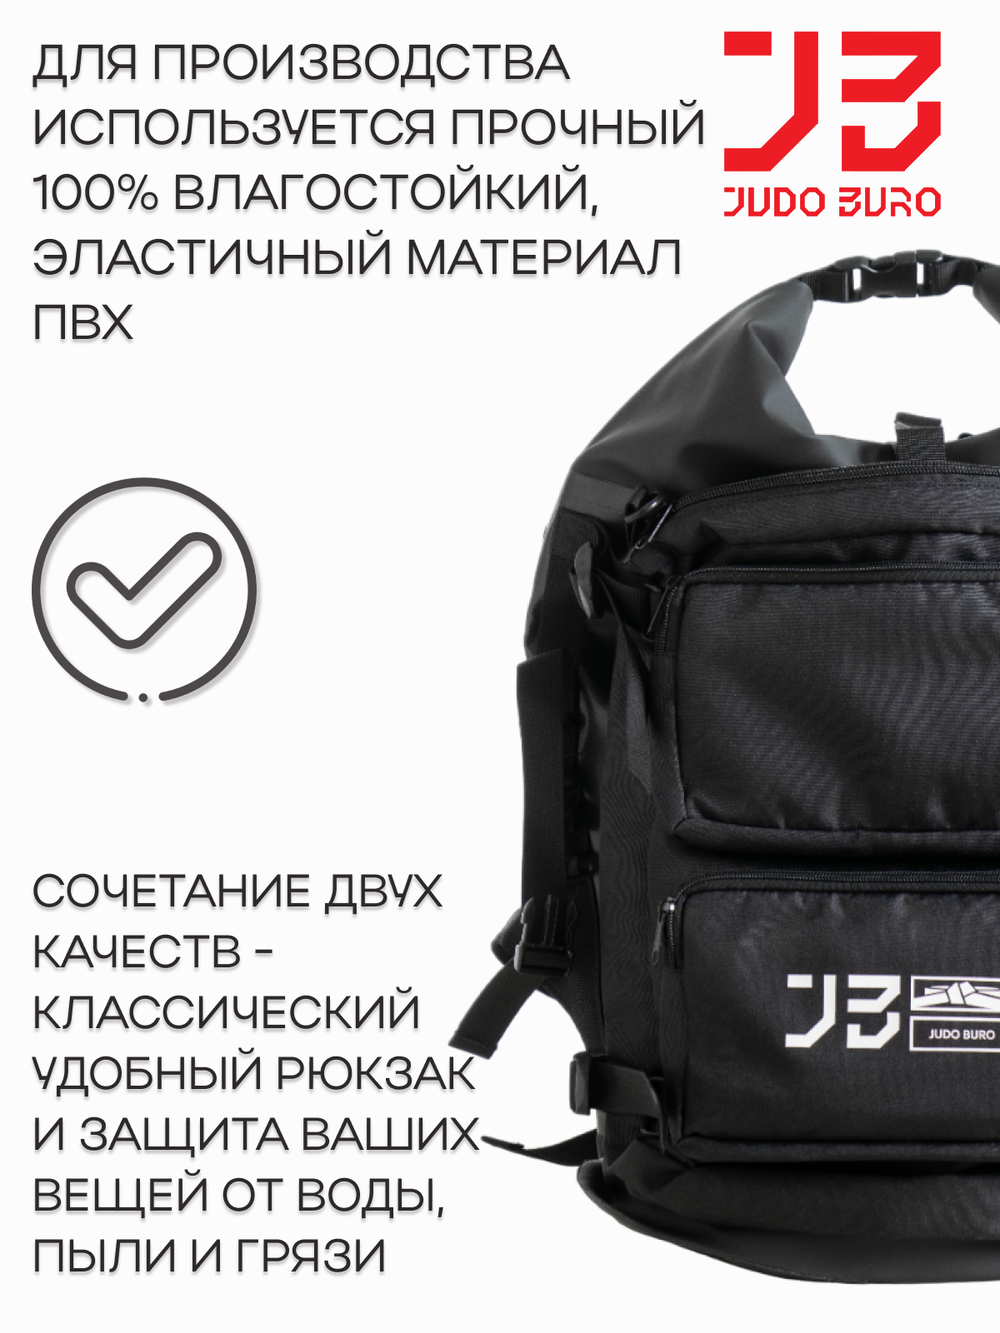 Спортивный черный рюкзак для кимоно Дзюдо Бюро мужской/ женский Judo Buro